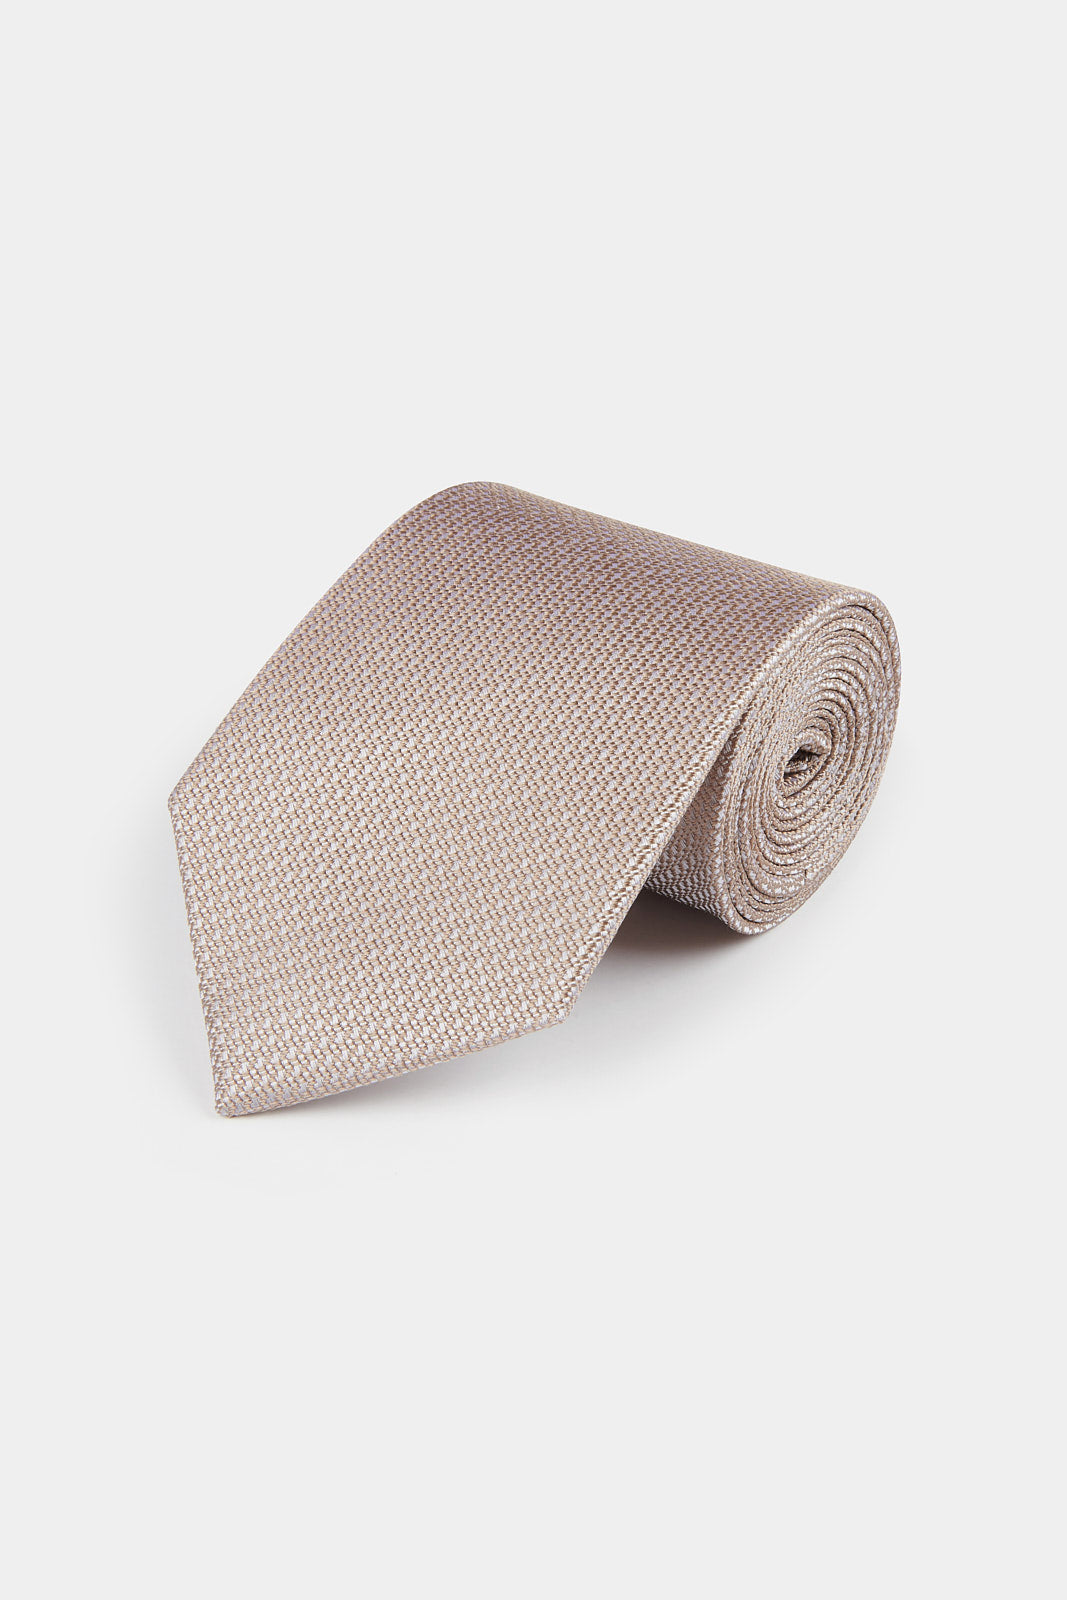 100% Silk Grenadine Tie in Warm Sand